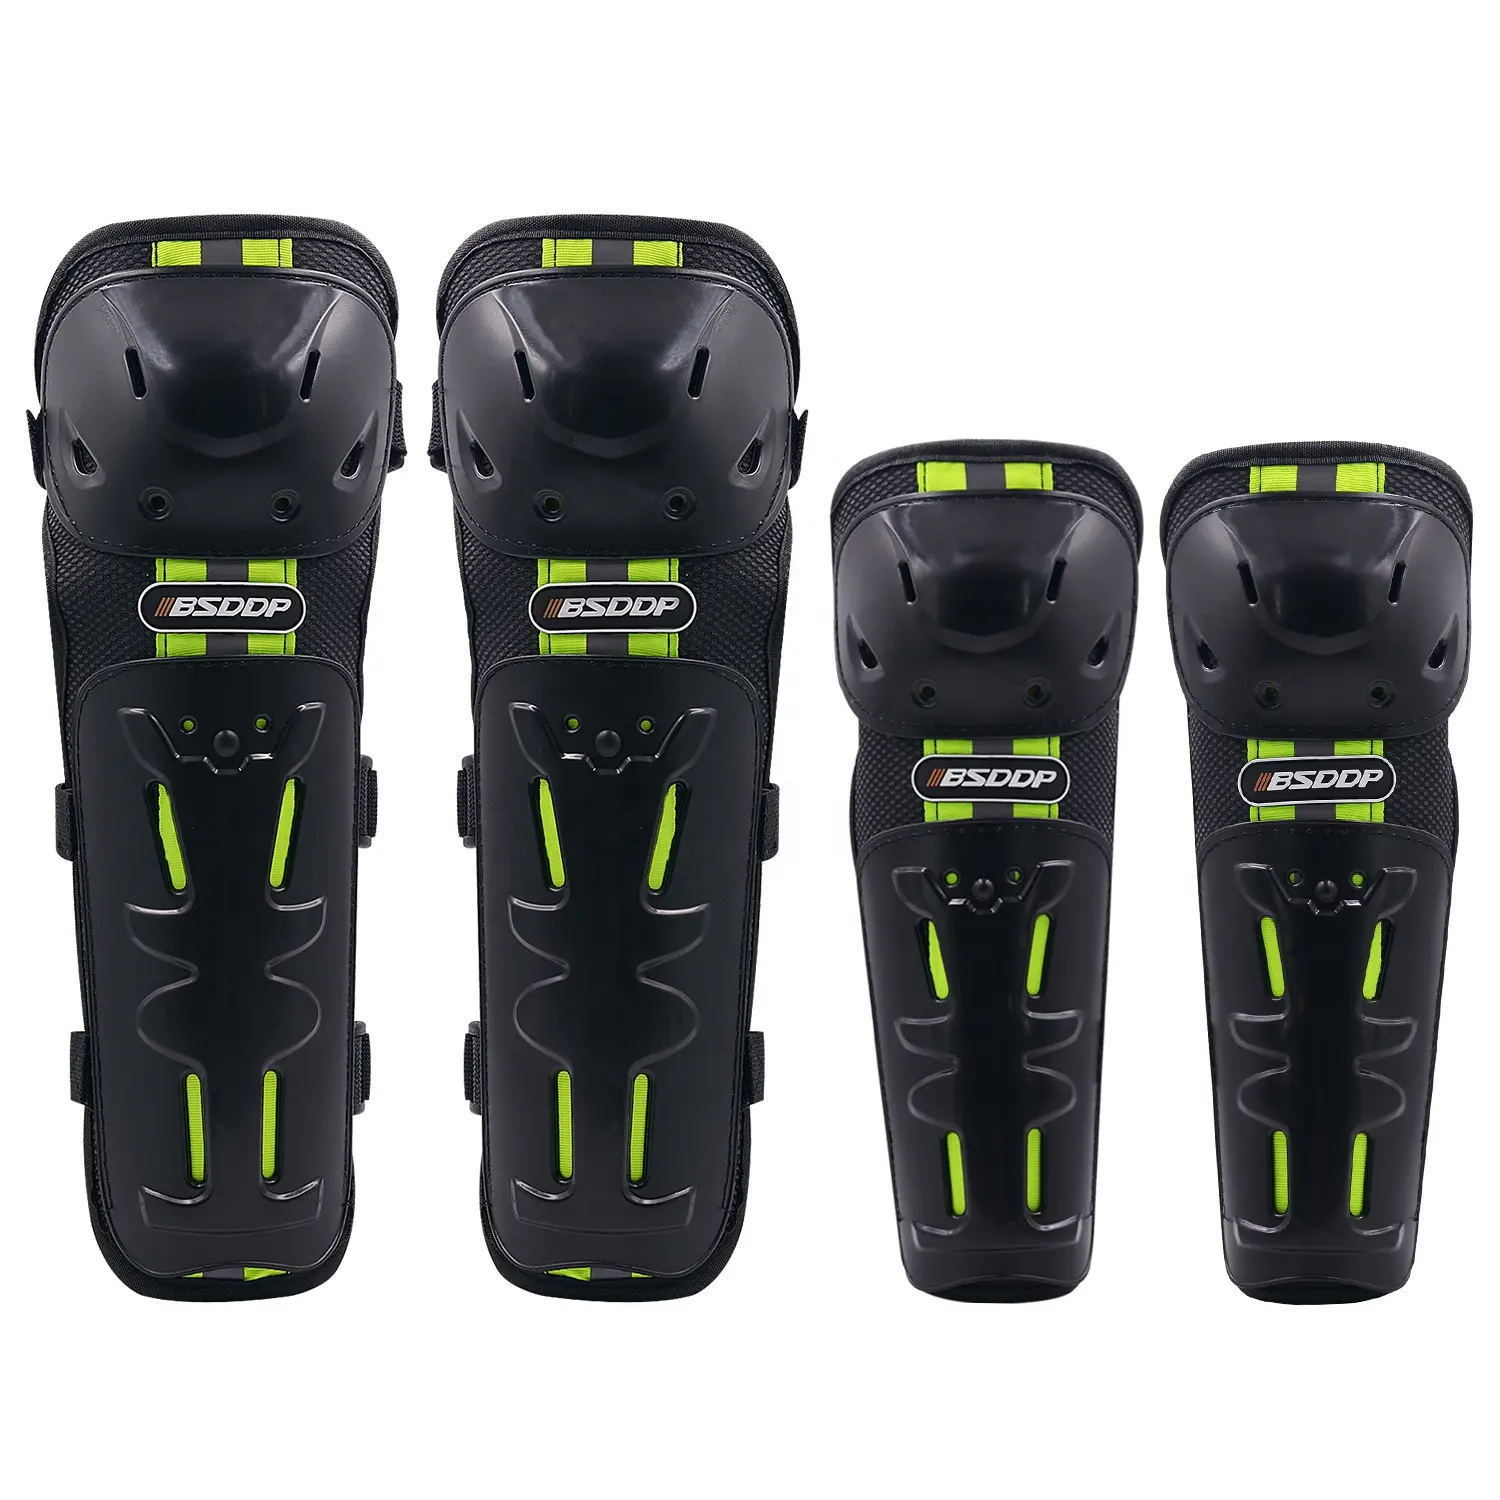 Ginocchiera regolabile/parastinchi e protezioni per gomiti protezioni per ginocchia e gomiti per moto con striscia riflettente